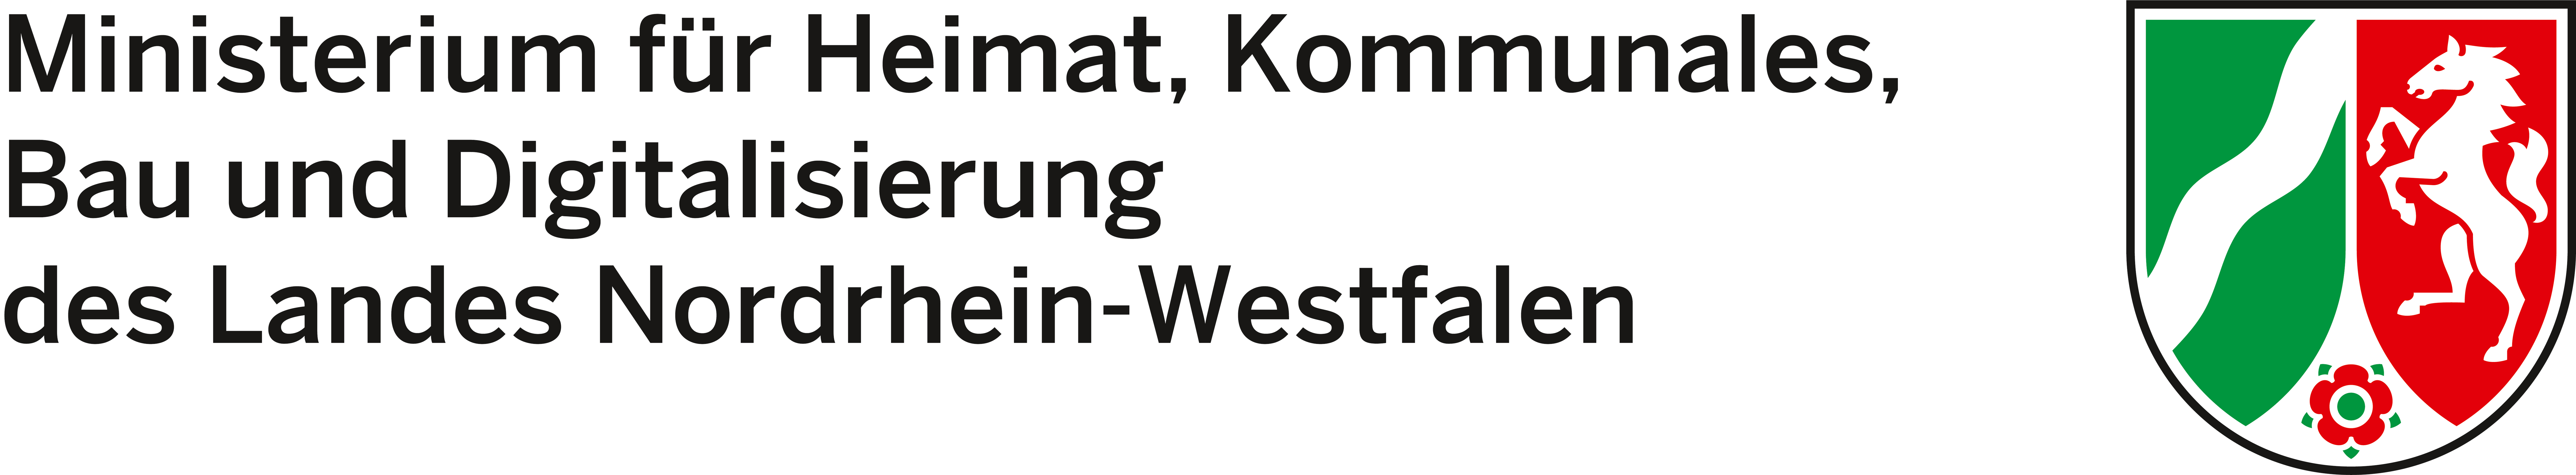 Logo: Ministerium für Heimat, Kommunales, Bau und Gleichstellung des Landes Nordrhein-Westfalen